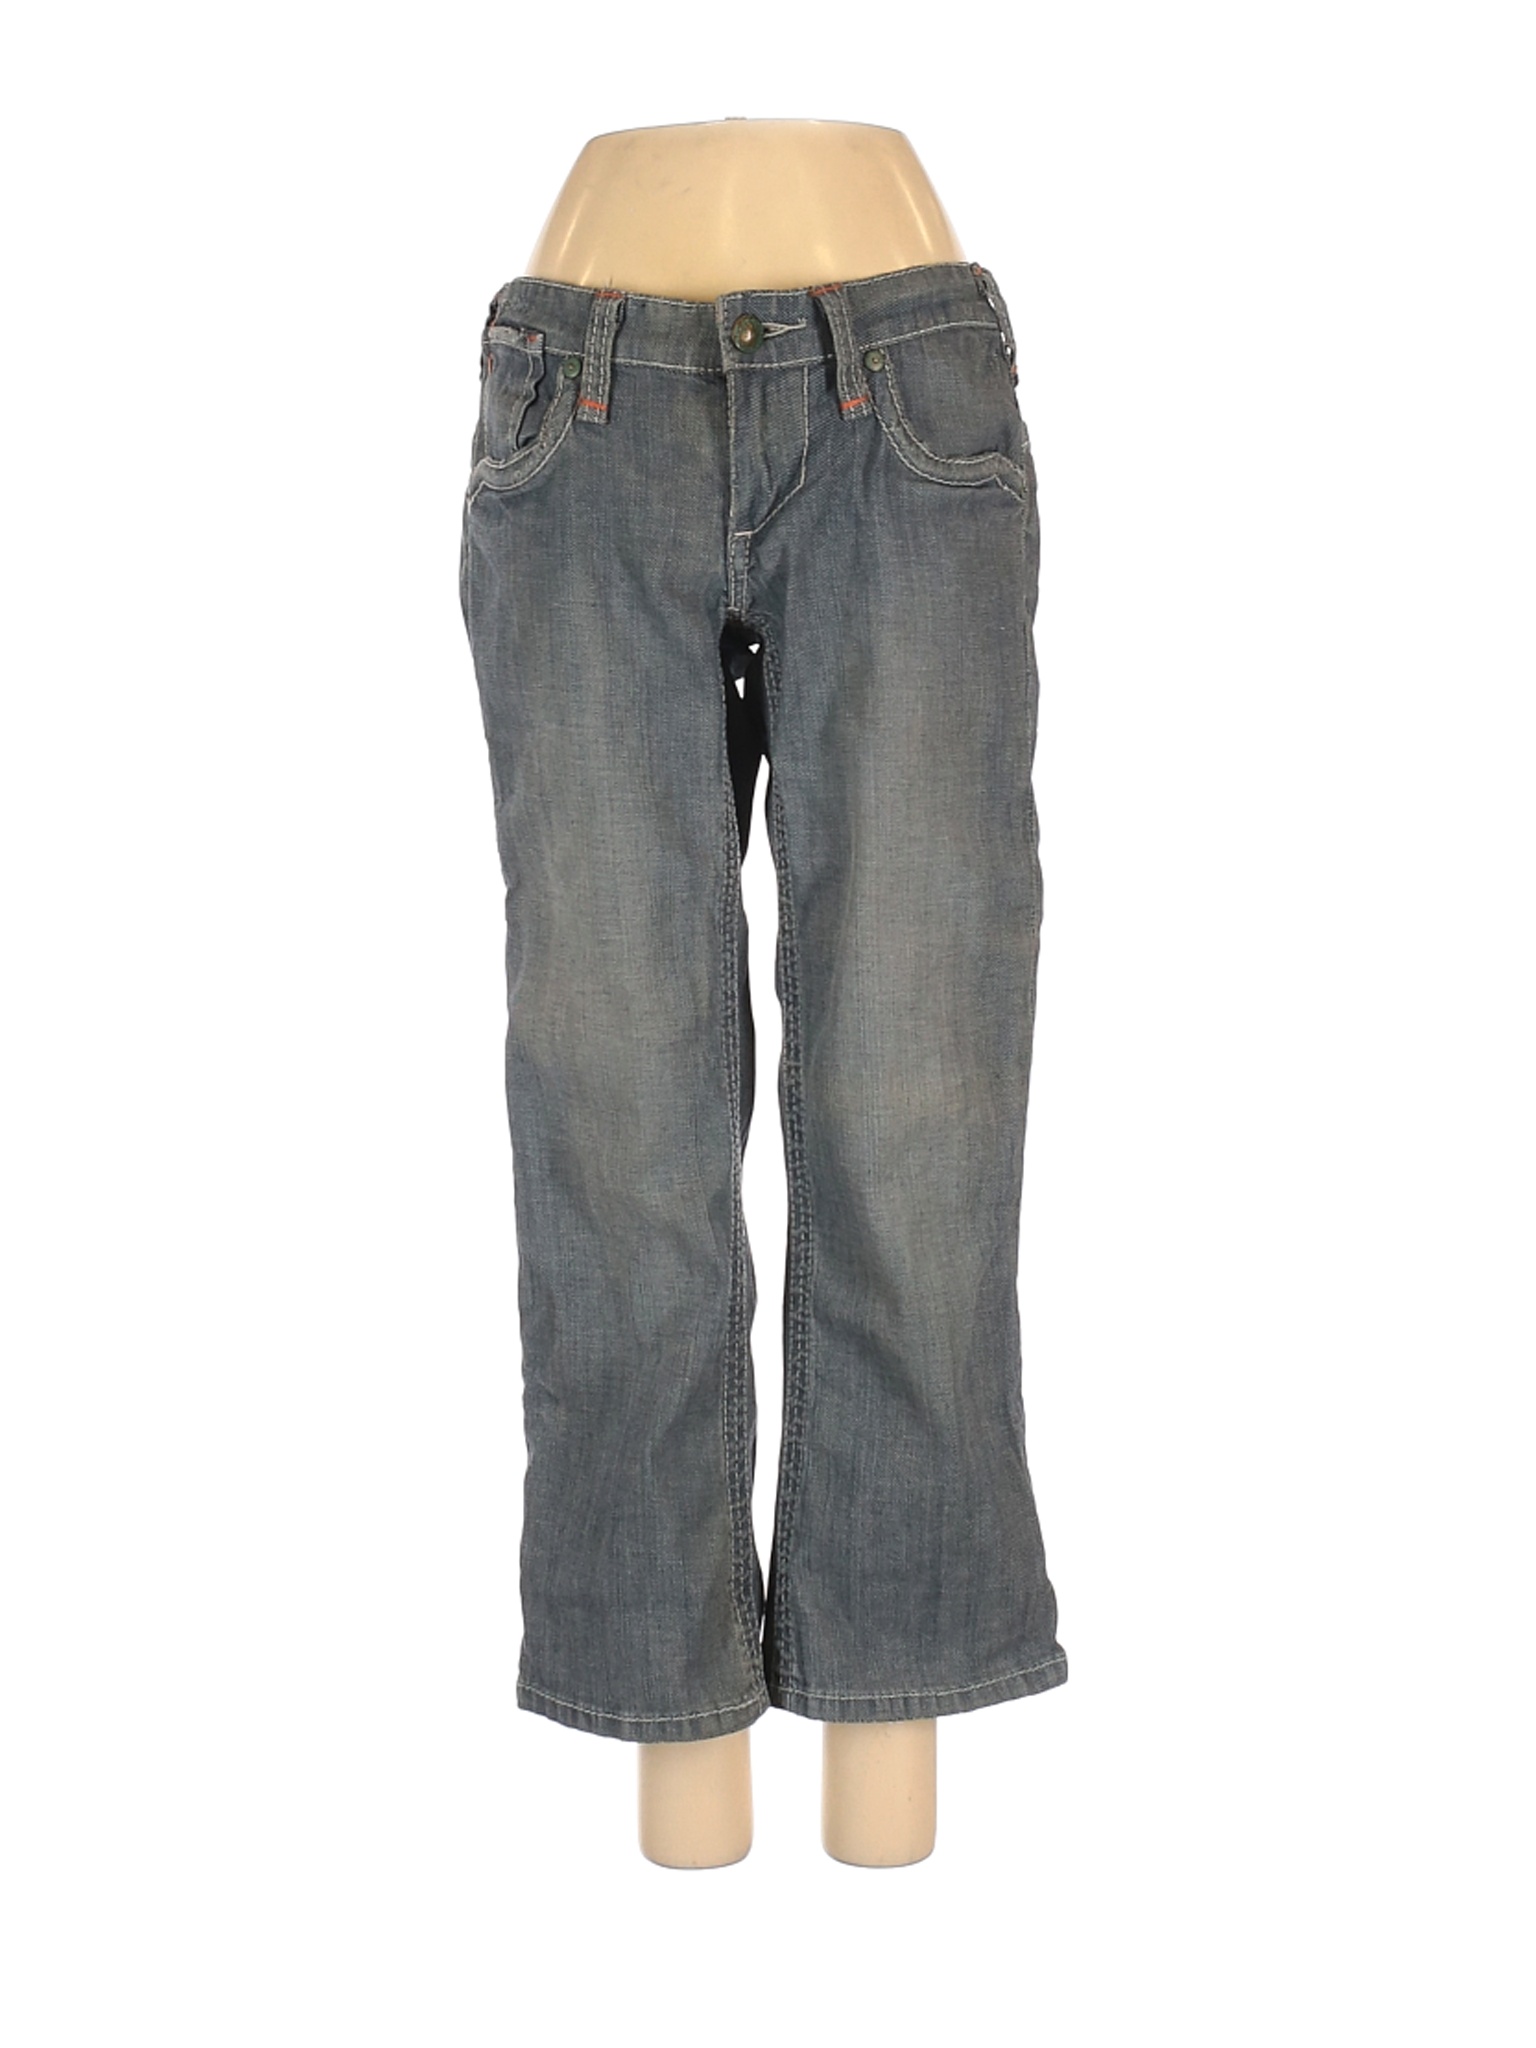 Stitch's Women Gray Jeans 26W | eBay